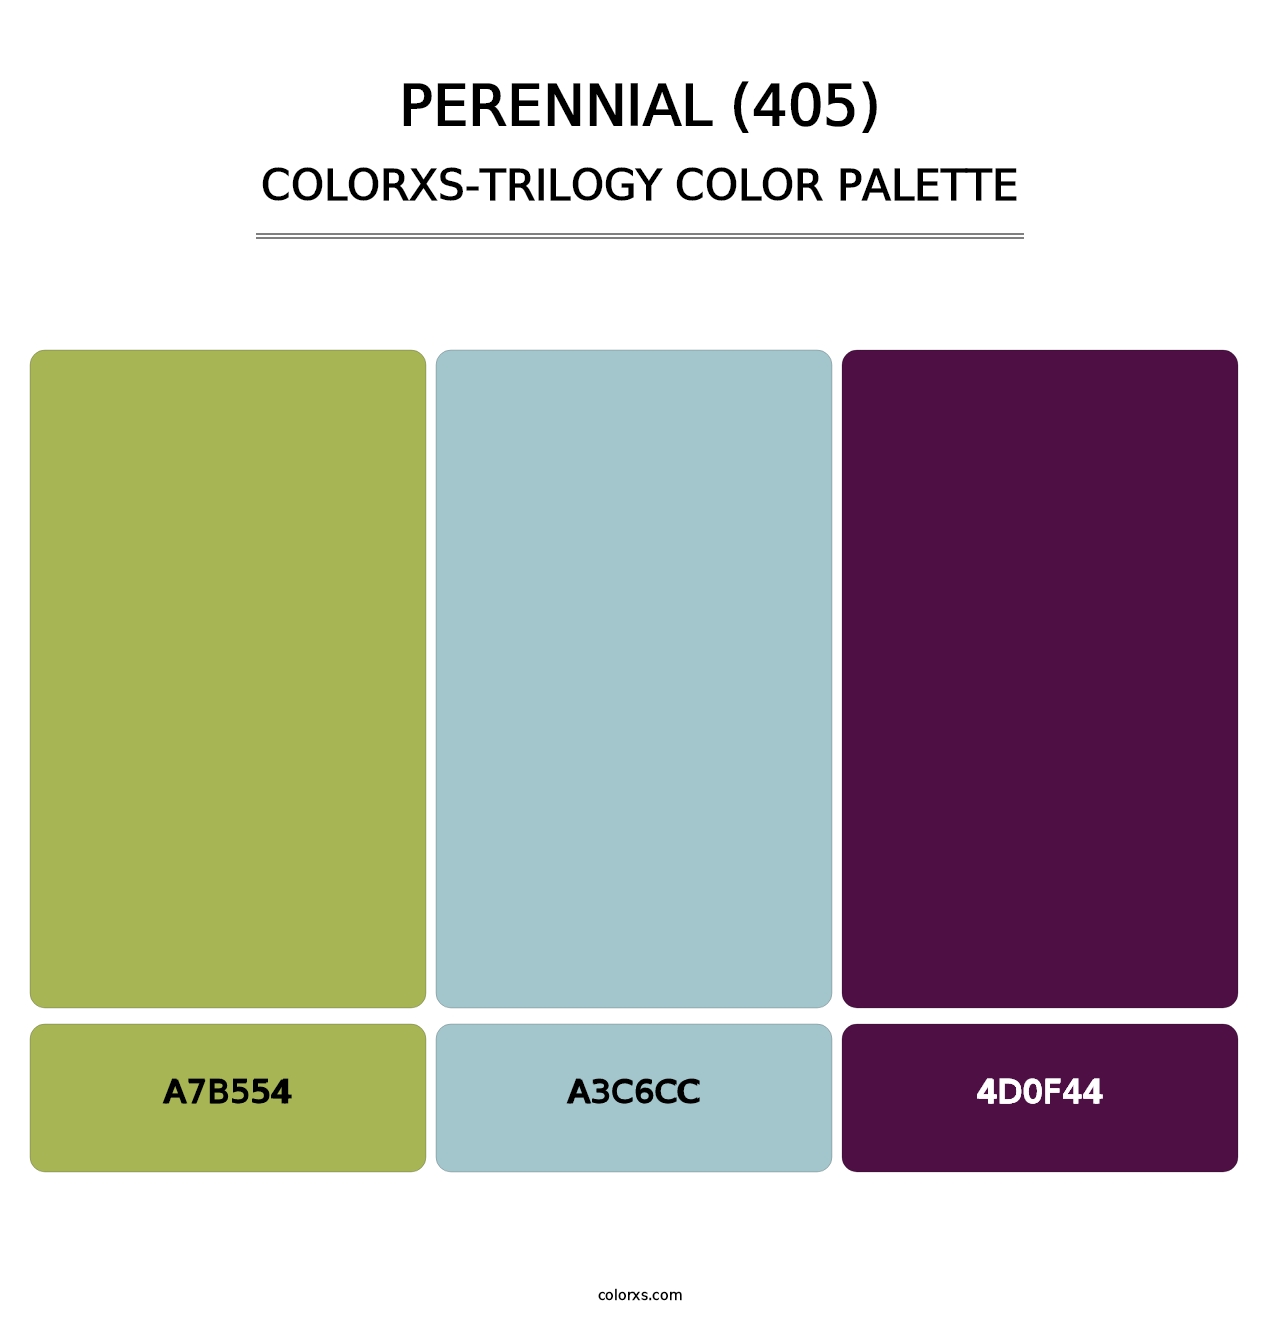 Perennial (405) - Colorxs Trilogy Palette